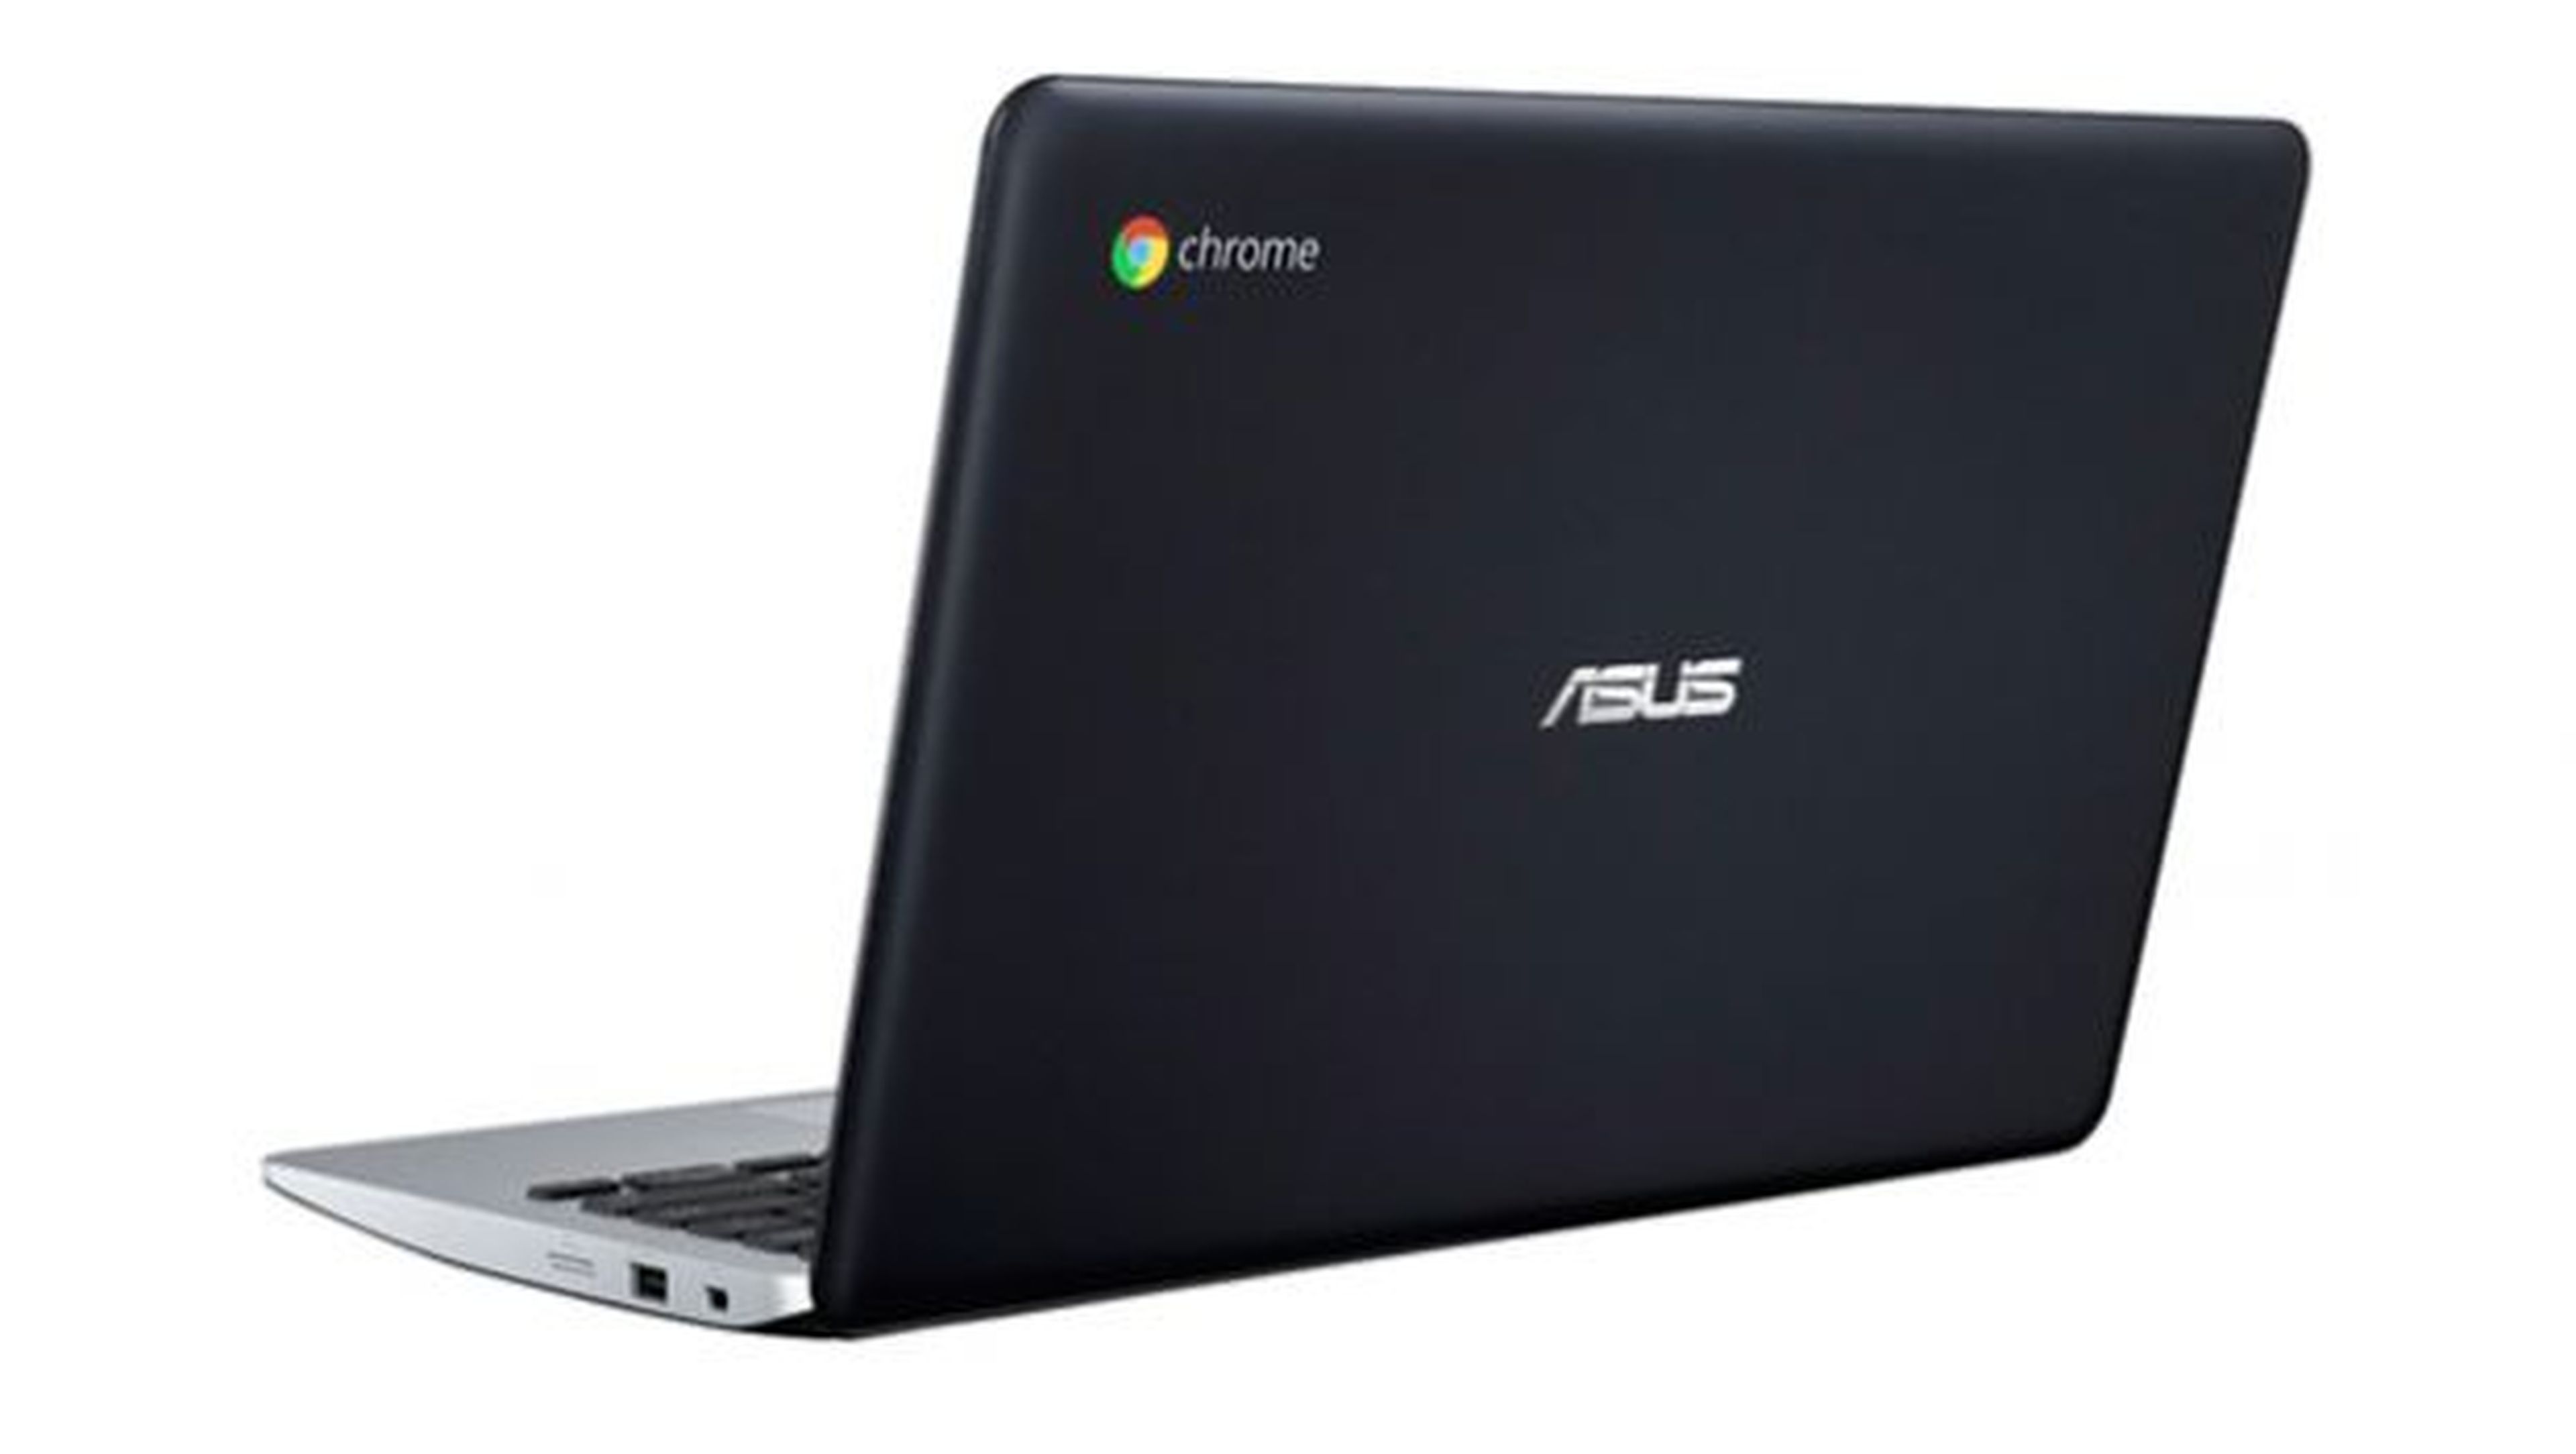 Según el fabricante, el Asus Chromebook C200MA ofrece una autonomía de hasta 11 horas de uso sin necesidad de recargar la batería.